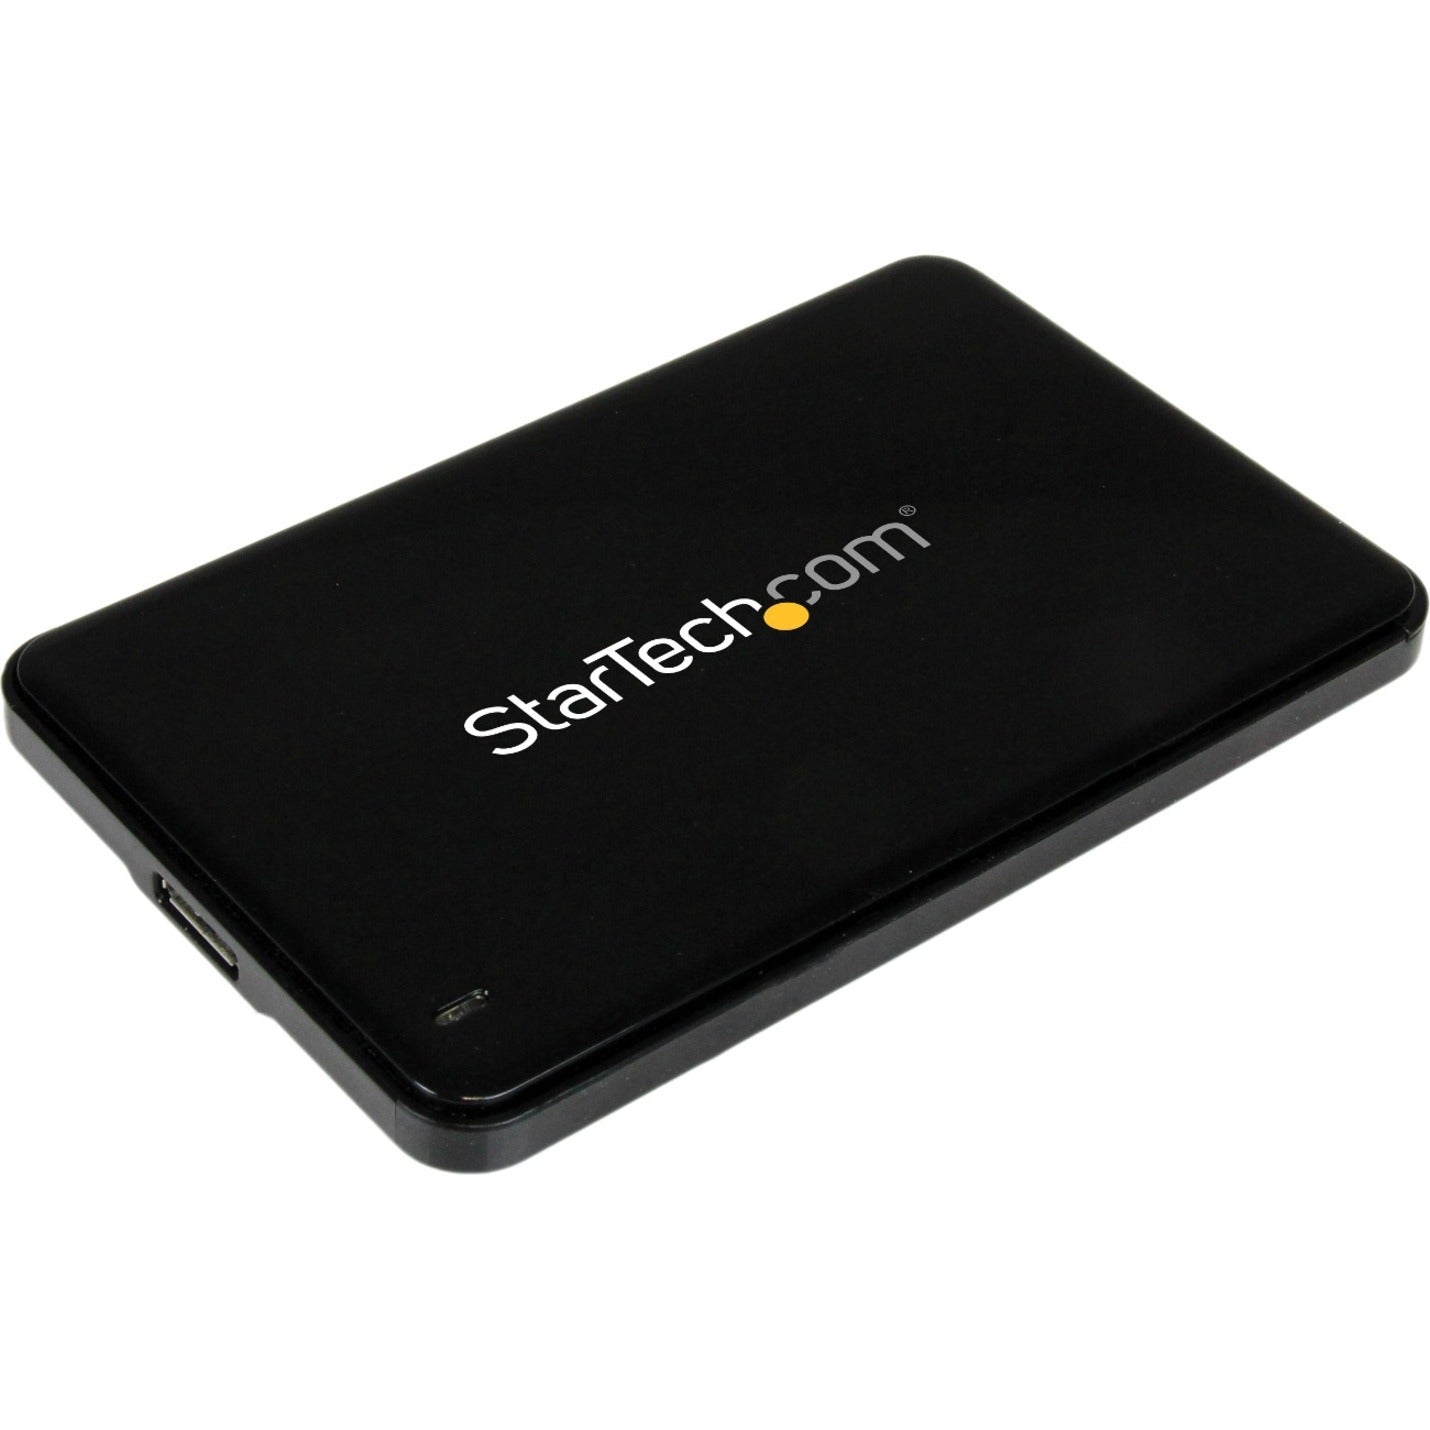 StarTech.com S2510BPU337 2.5in USB 3.0 SATA Hard Drive Enclosure w/ UASP, Slim 7mm SATA III SSD/HDD, Fast Data Transfer